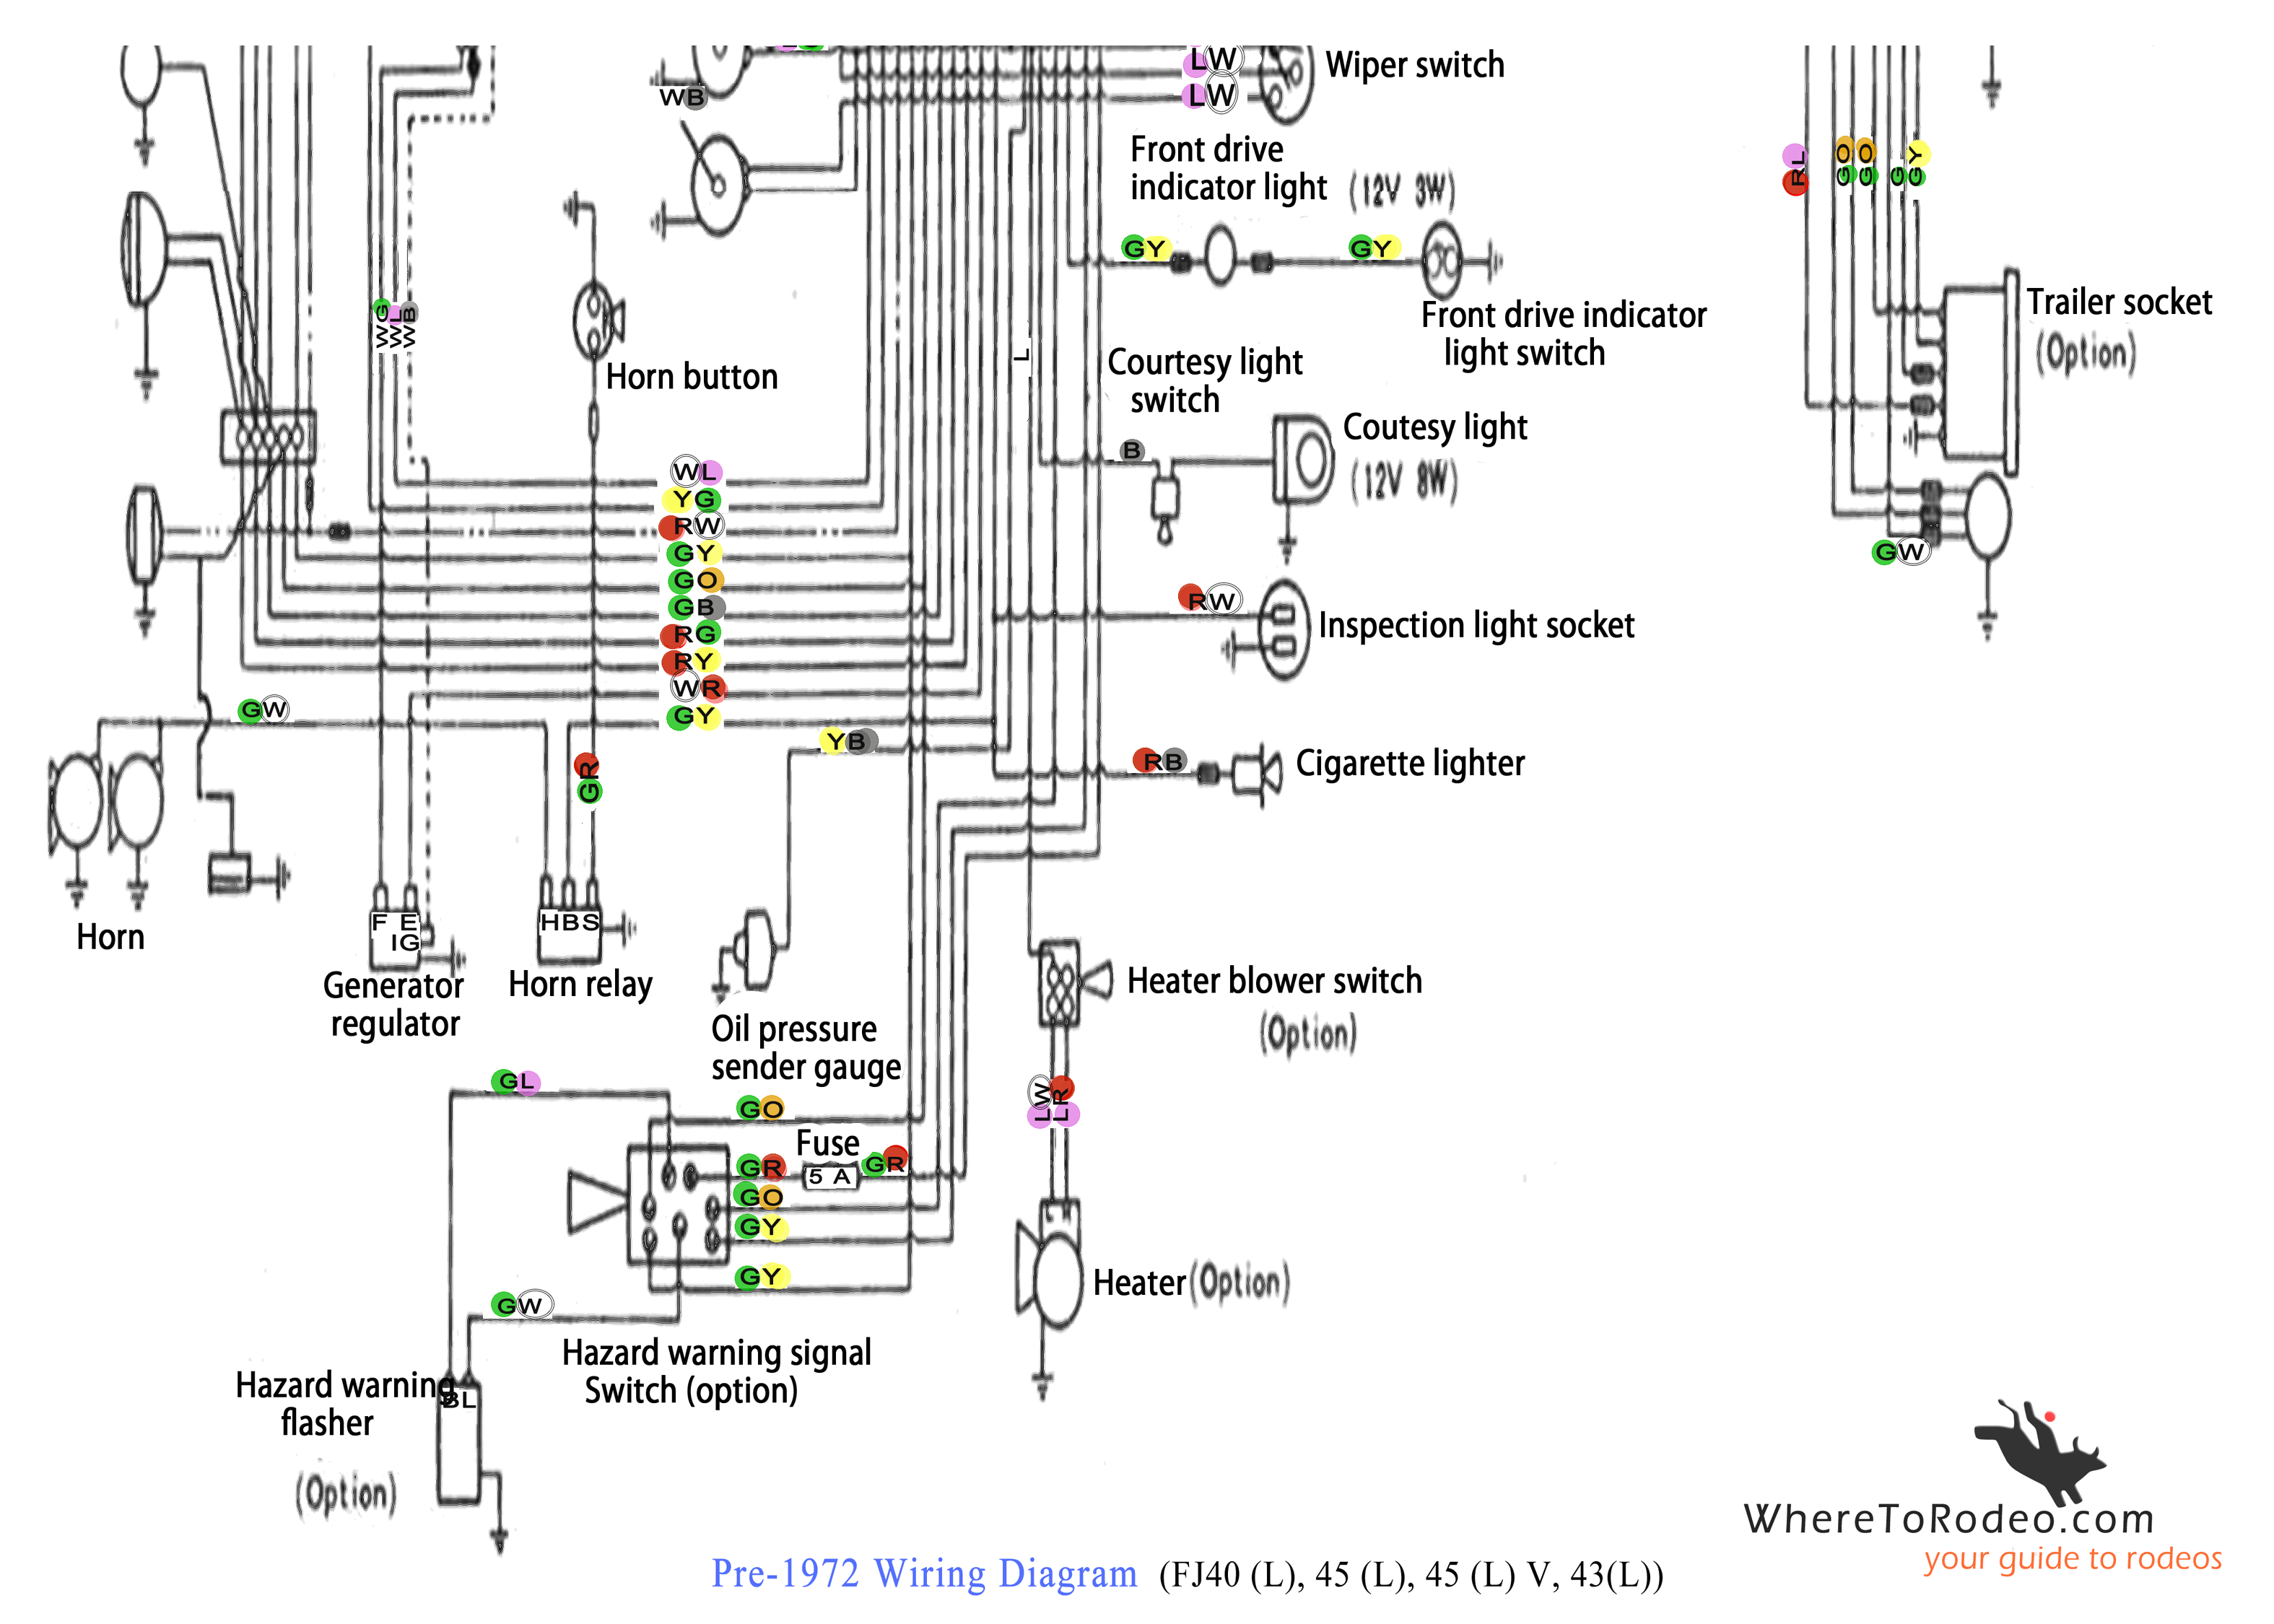 Toyota Land Cruiser 79 Series Wiring Diagram Pdf - http://eightstrings